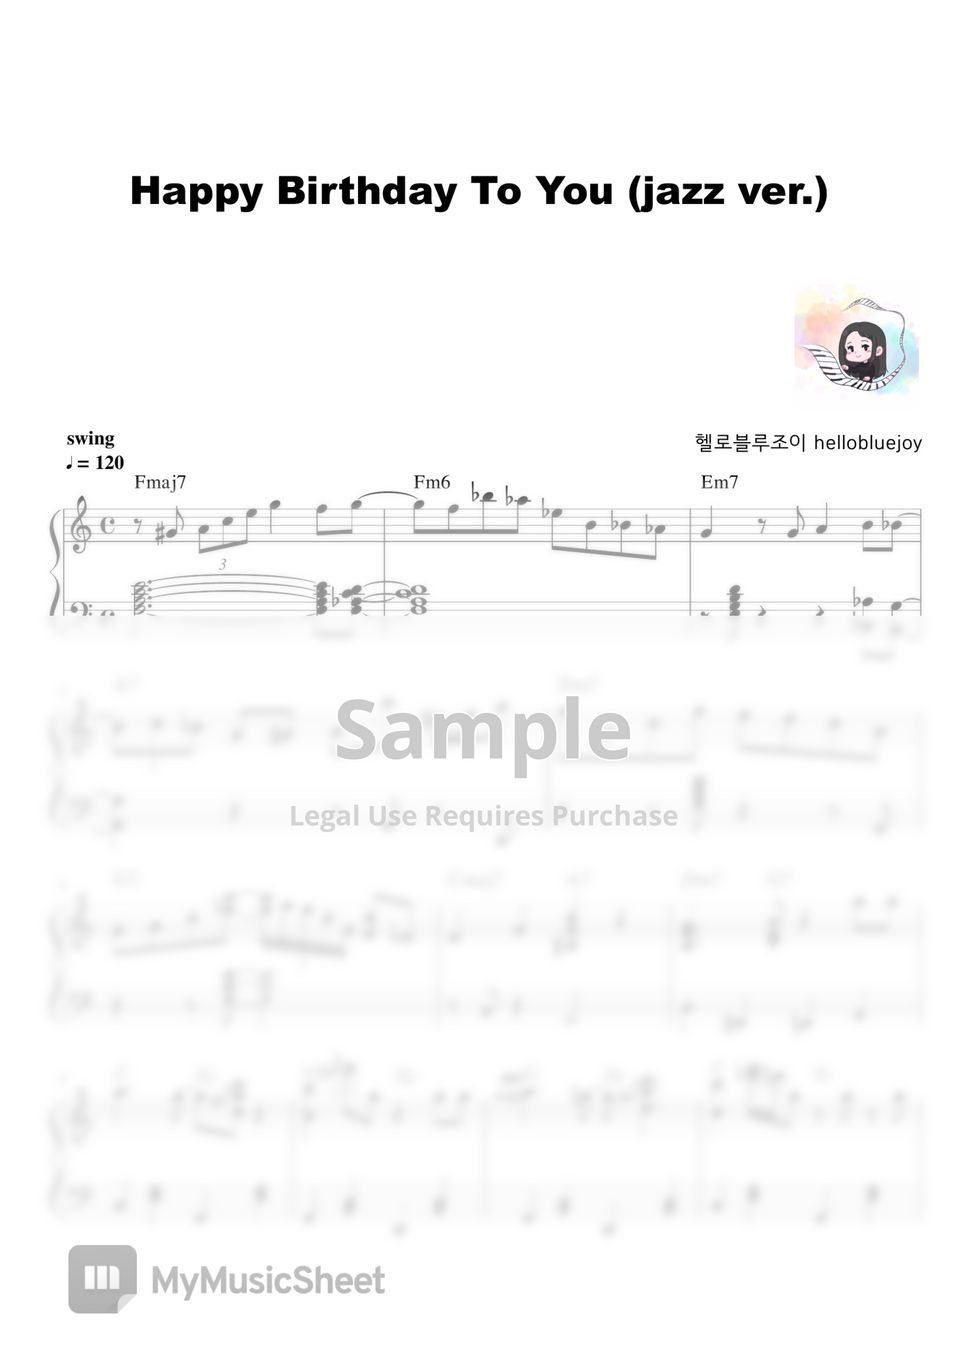 ㅤ - 생일 축하 송 (재즈 버전) by 헬로블루조이